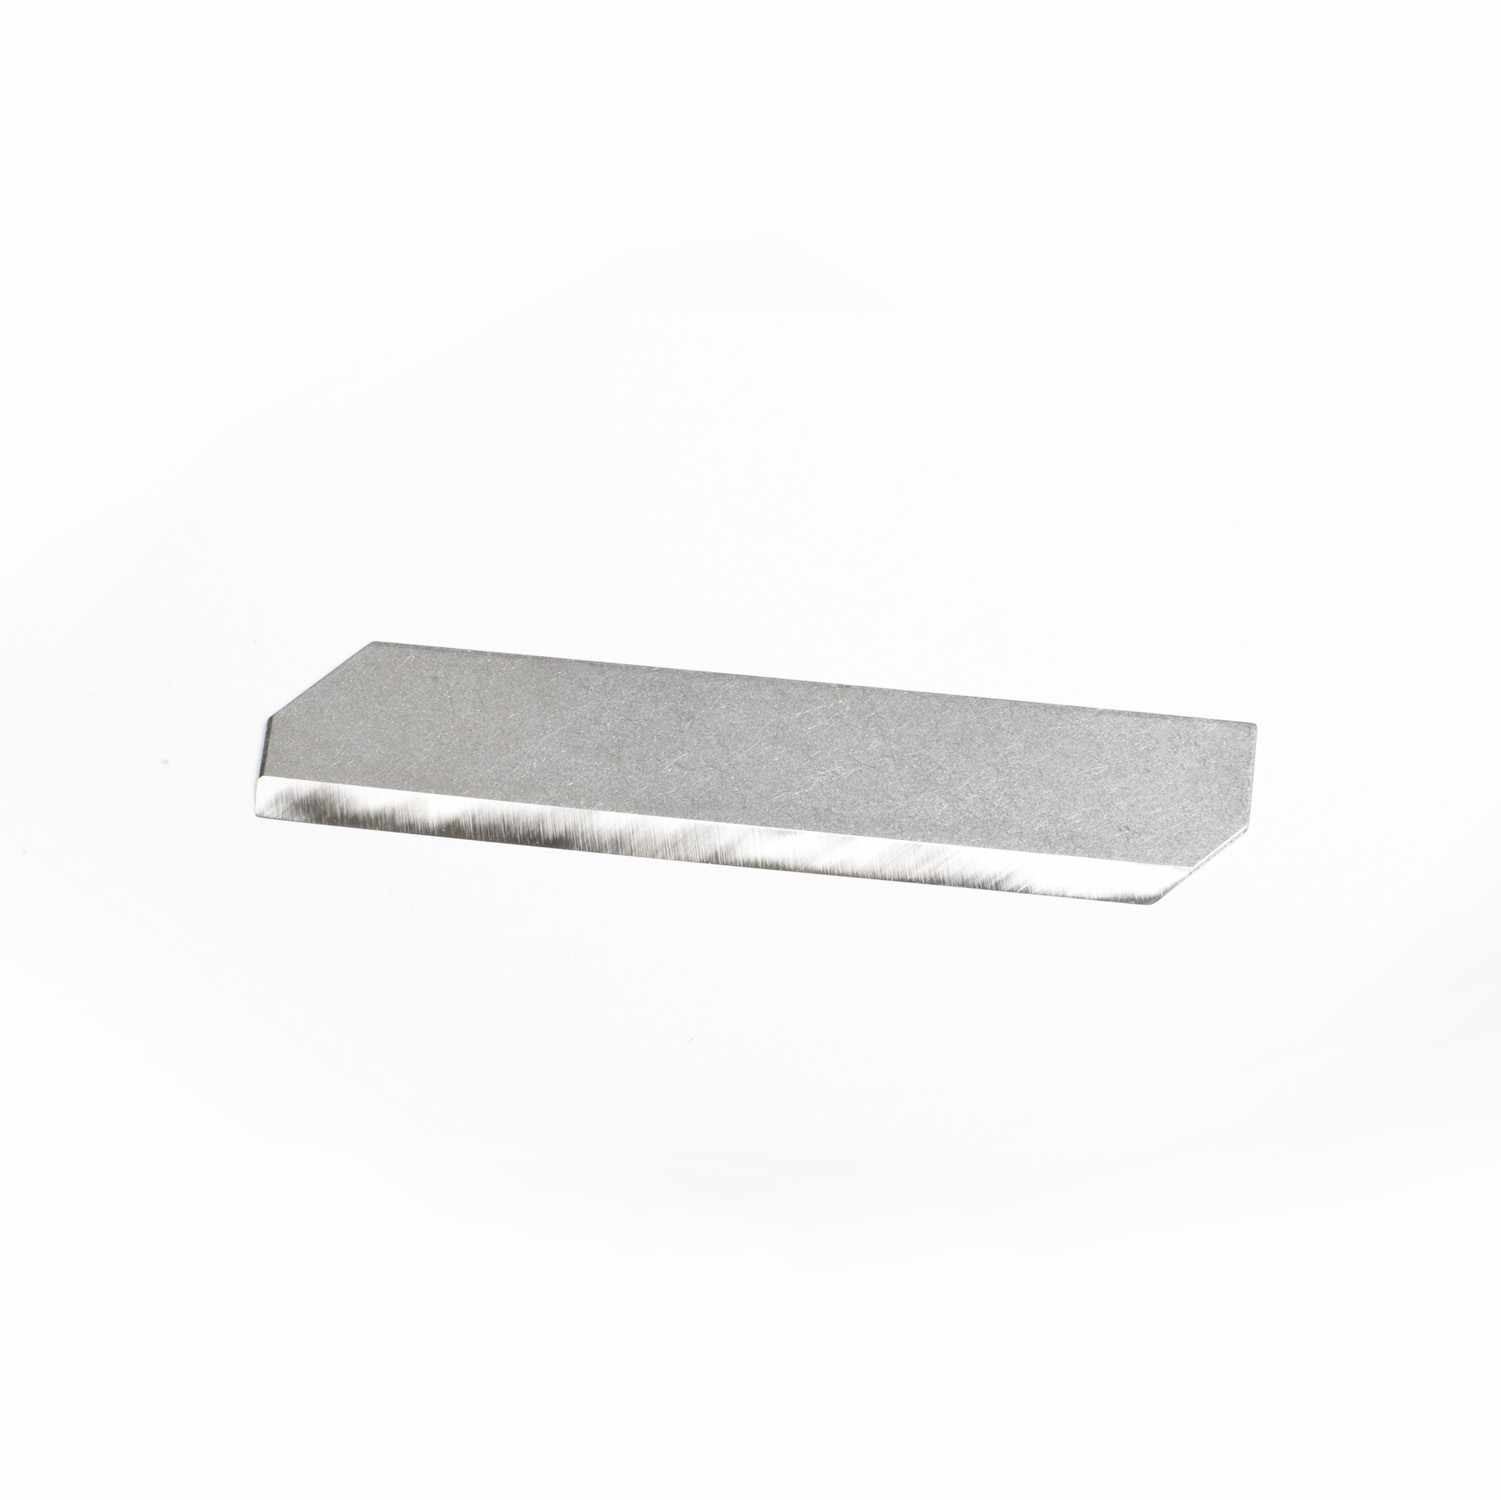 Flat Blade for Regular Benriner Mandolin Slicer-3770 